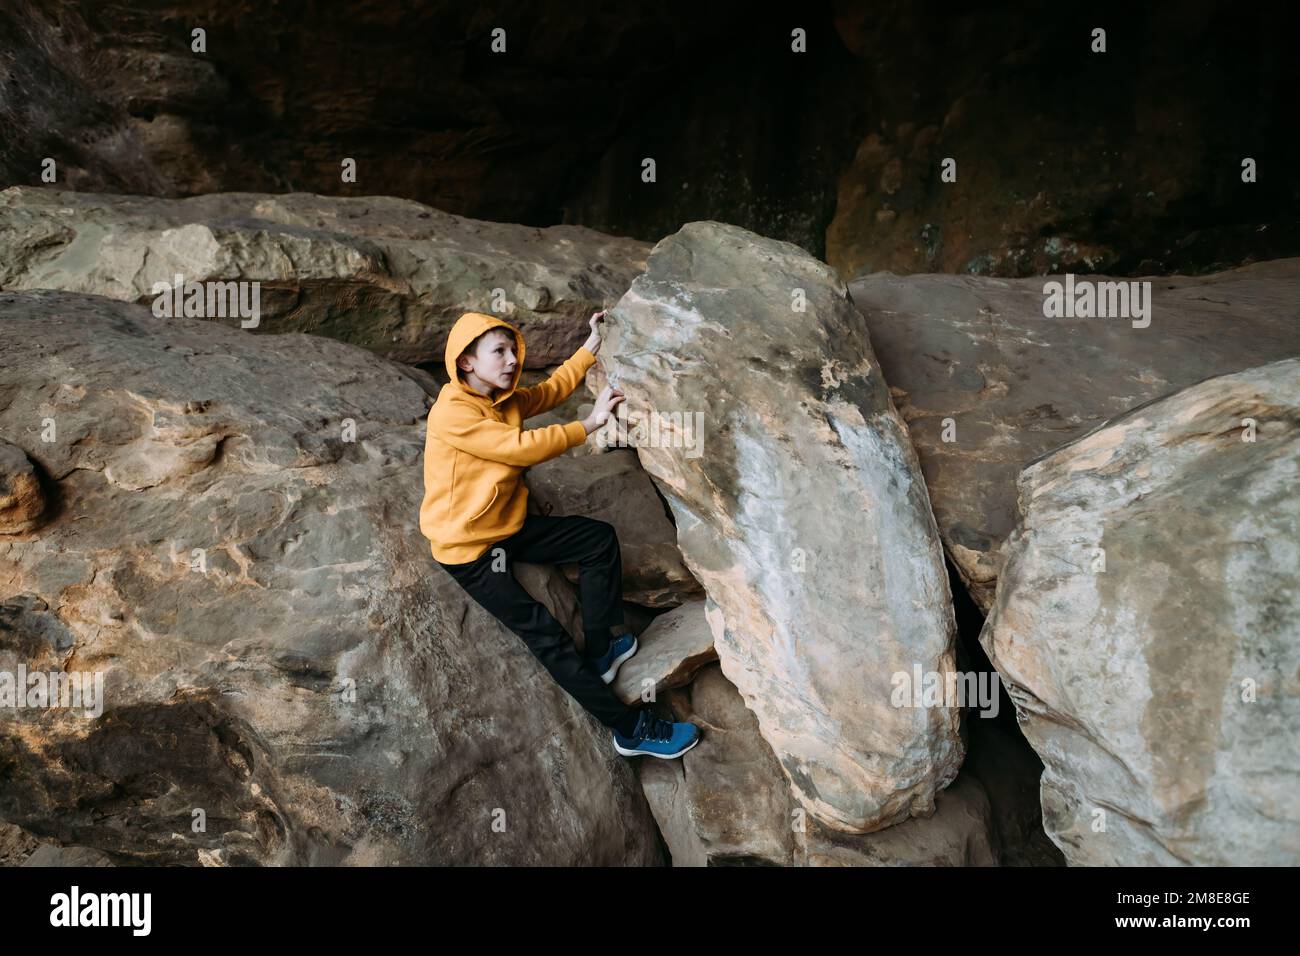 Jeune garçon explorant sur des rochers pendant la randonnée Banque D'Images